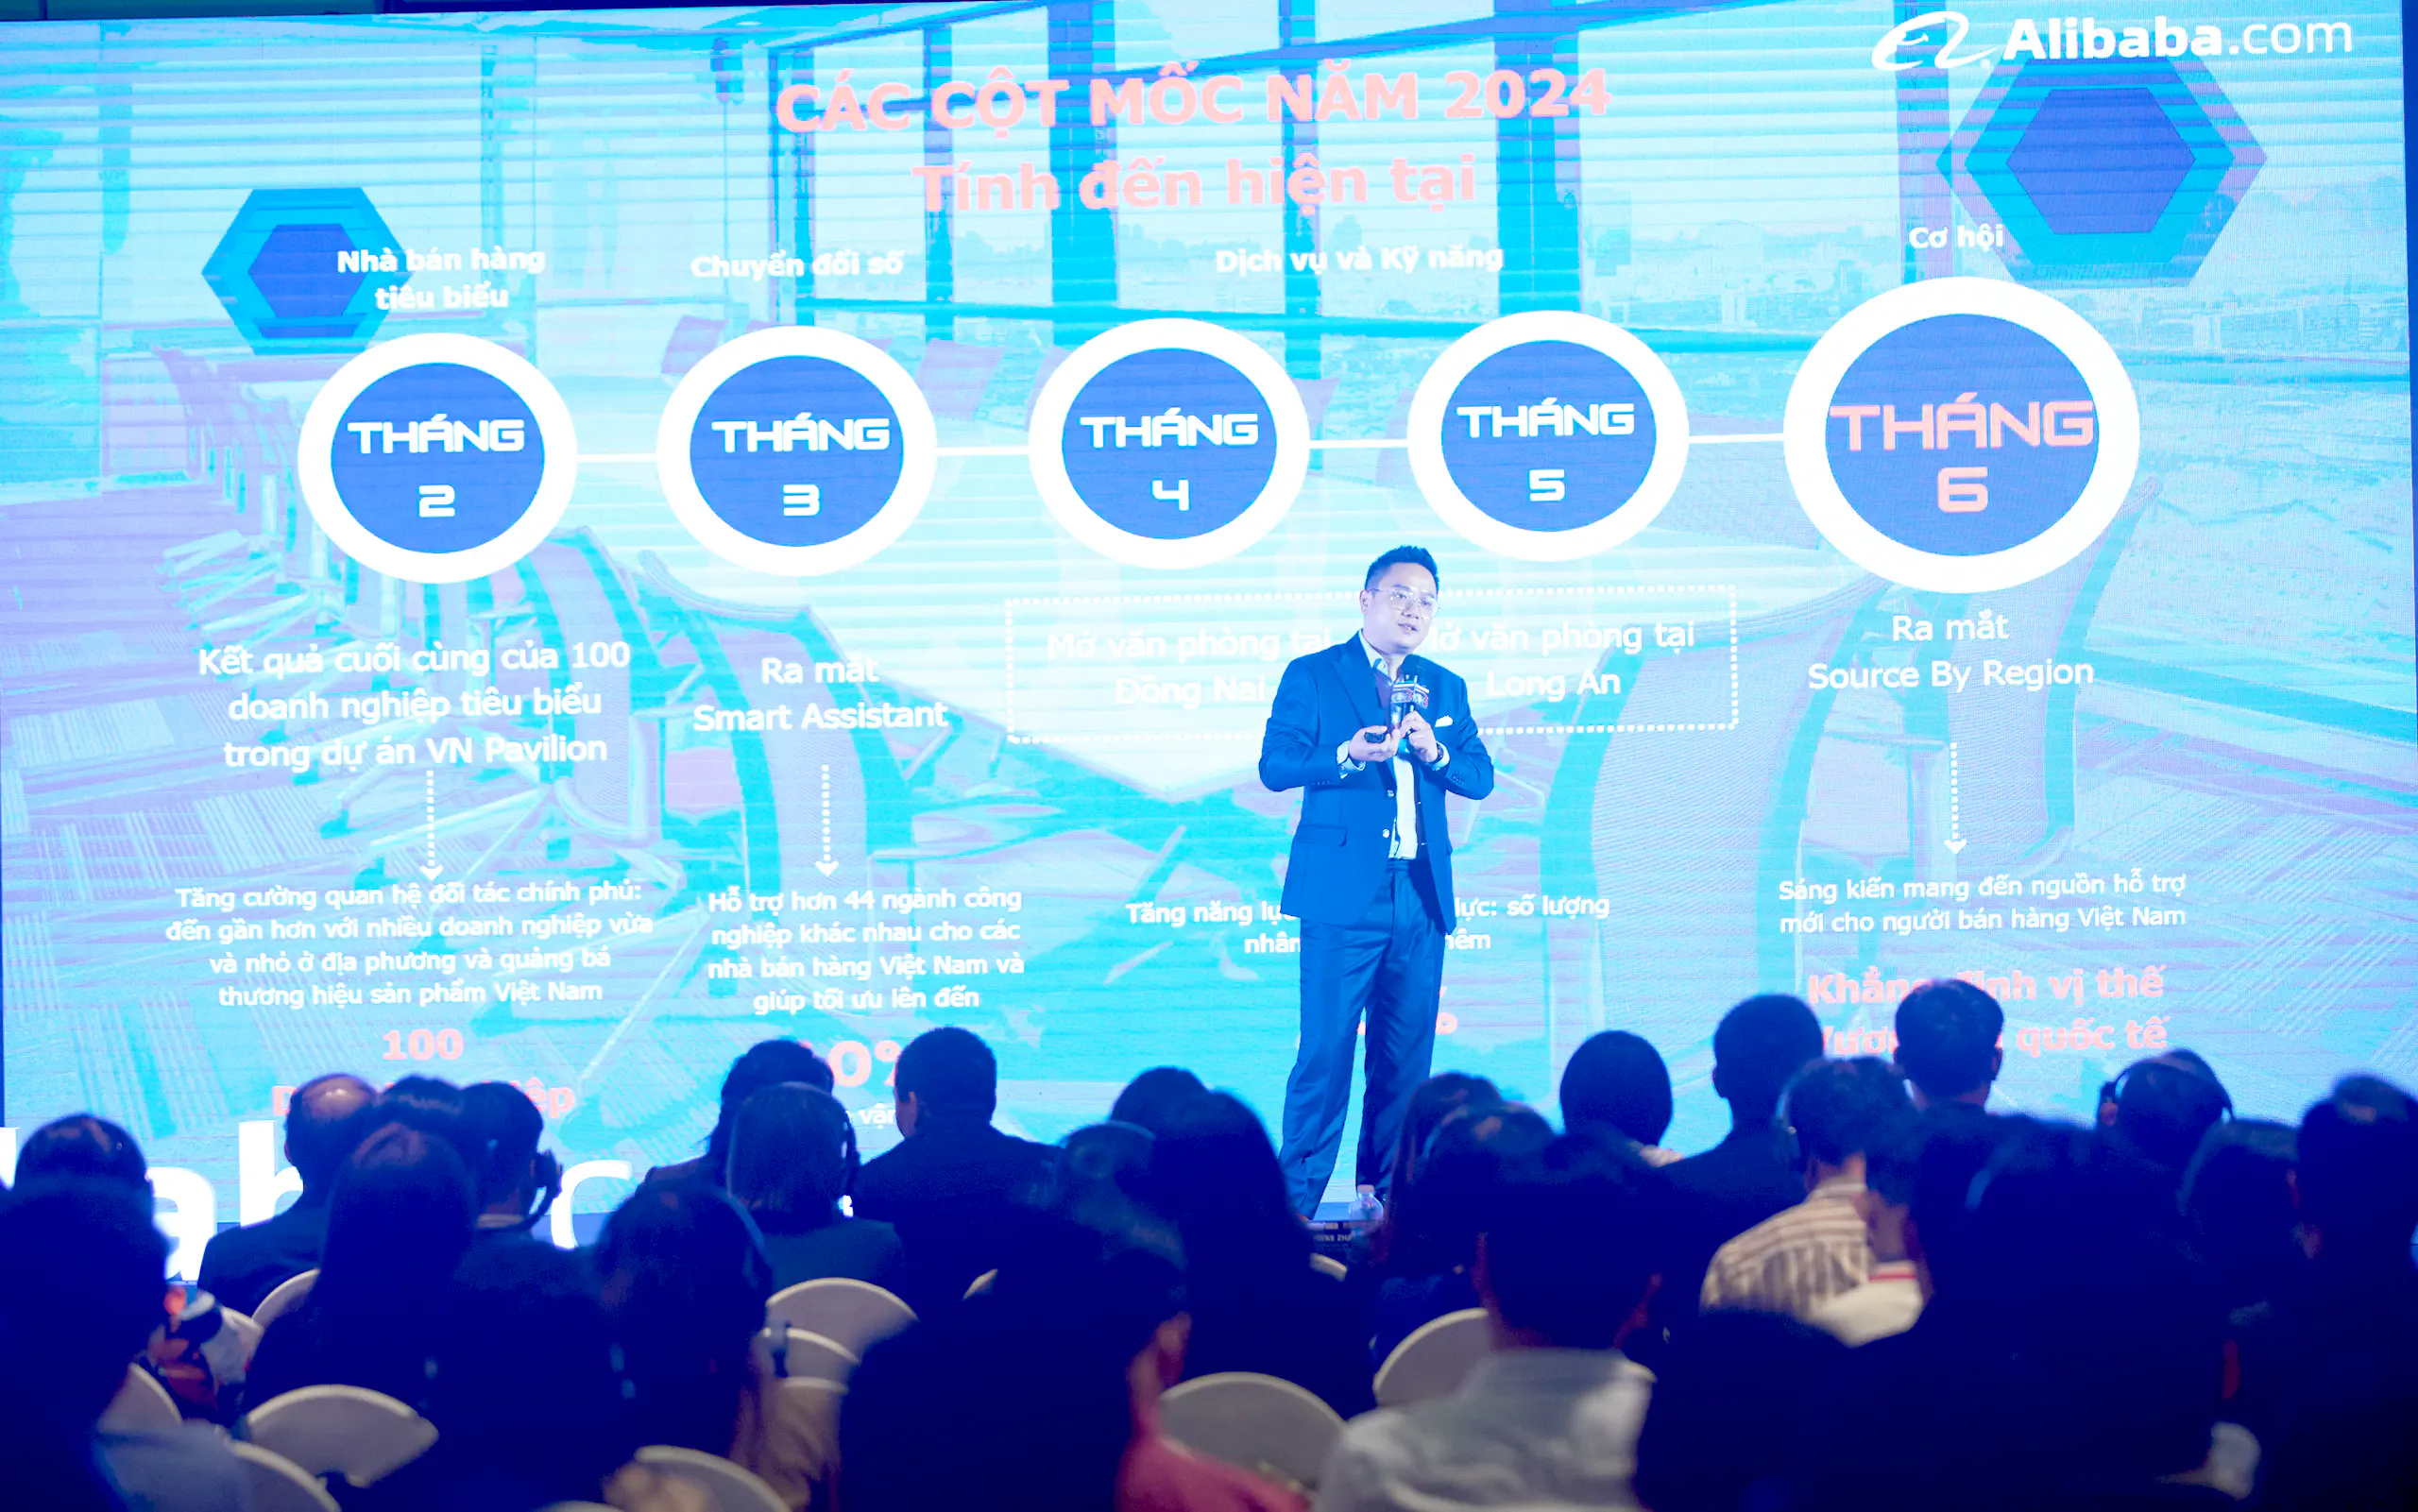 Alibaba.com ra mắt 'Source by Region' và báo cáo thị trường TMĐT B2B 2024